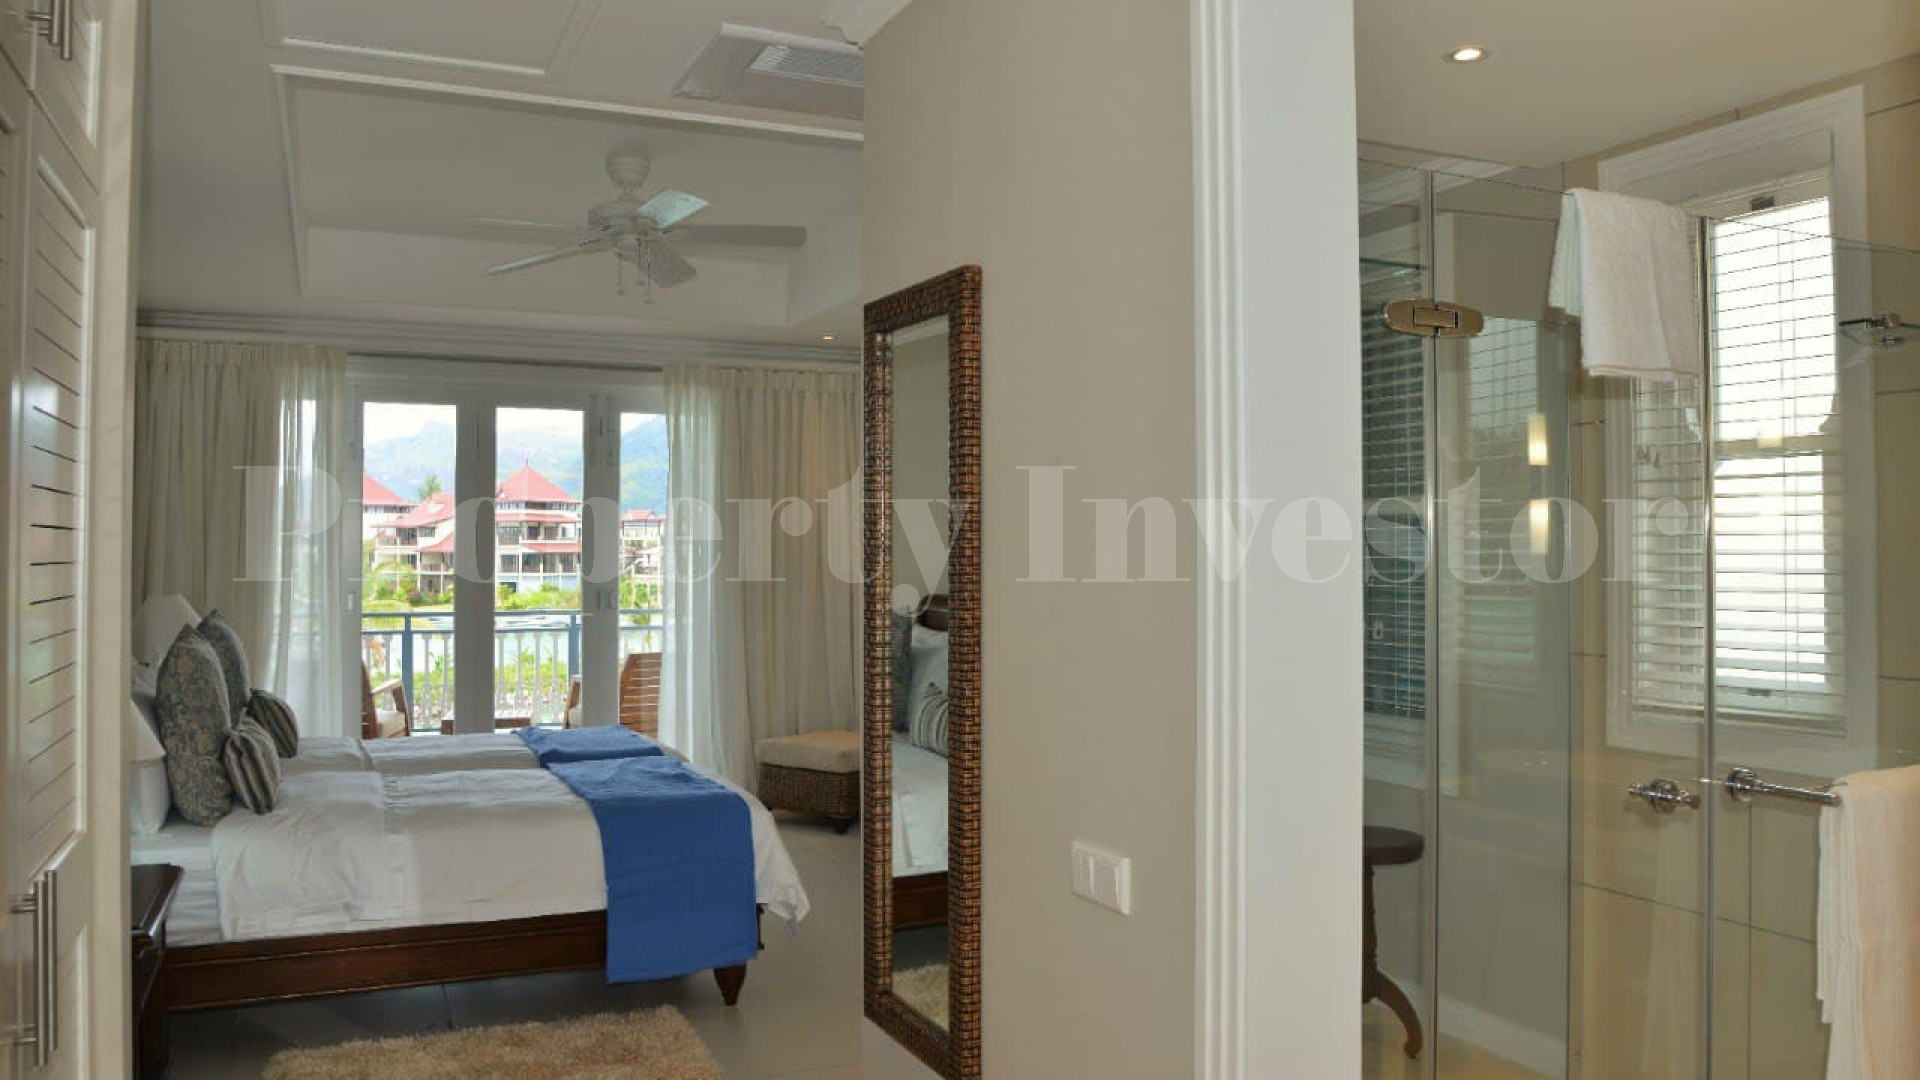 Изумительная роскошная вилла на 4 спальни с красивым видом на инфинити бассейн и марину на о.Иден, Сейшелы